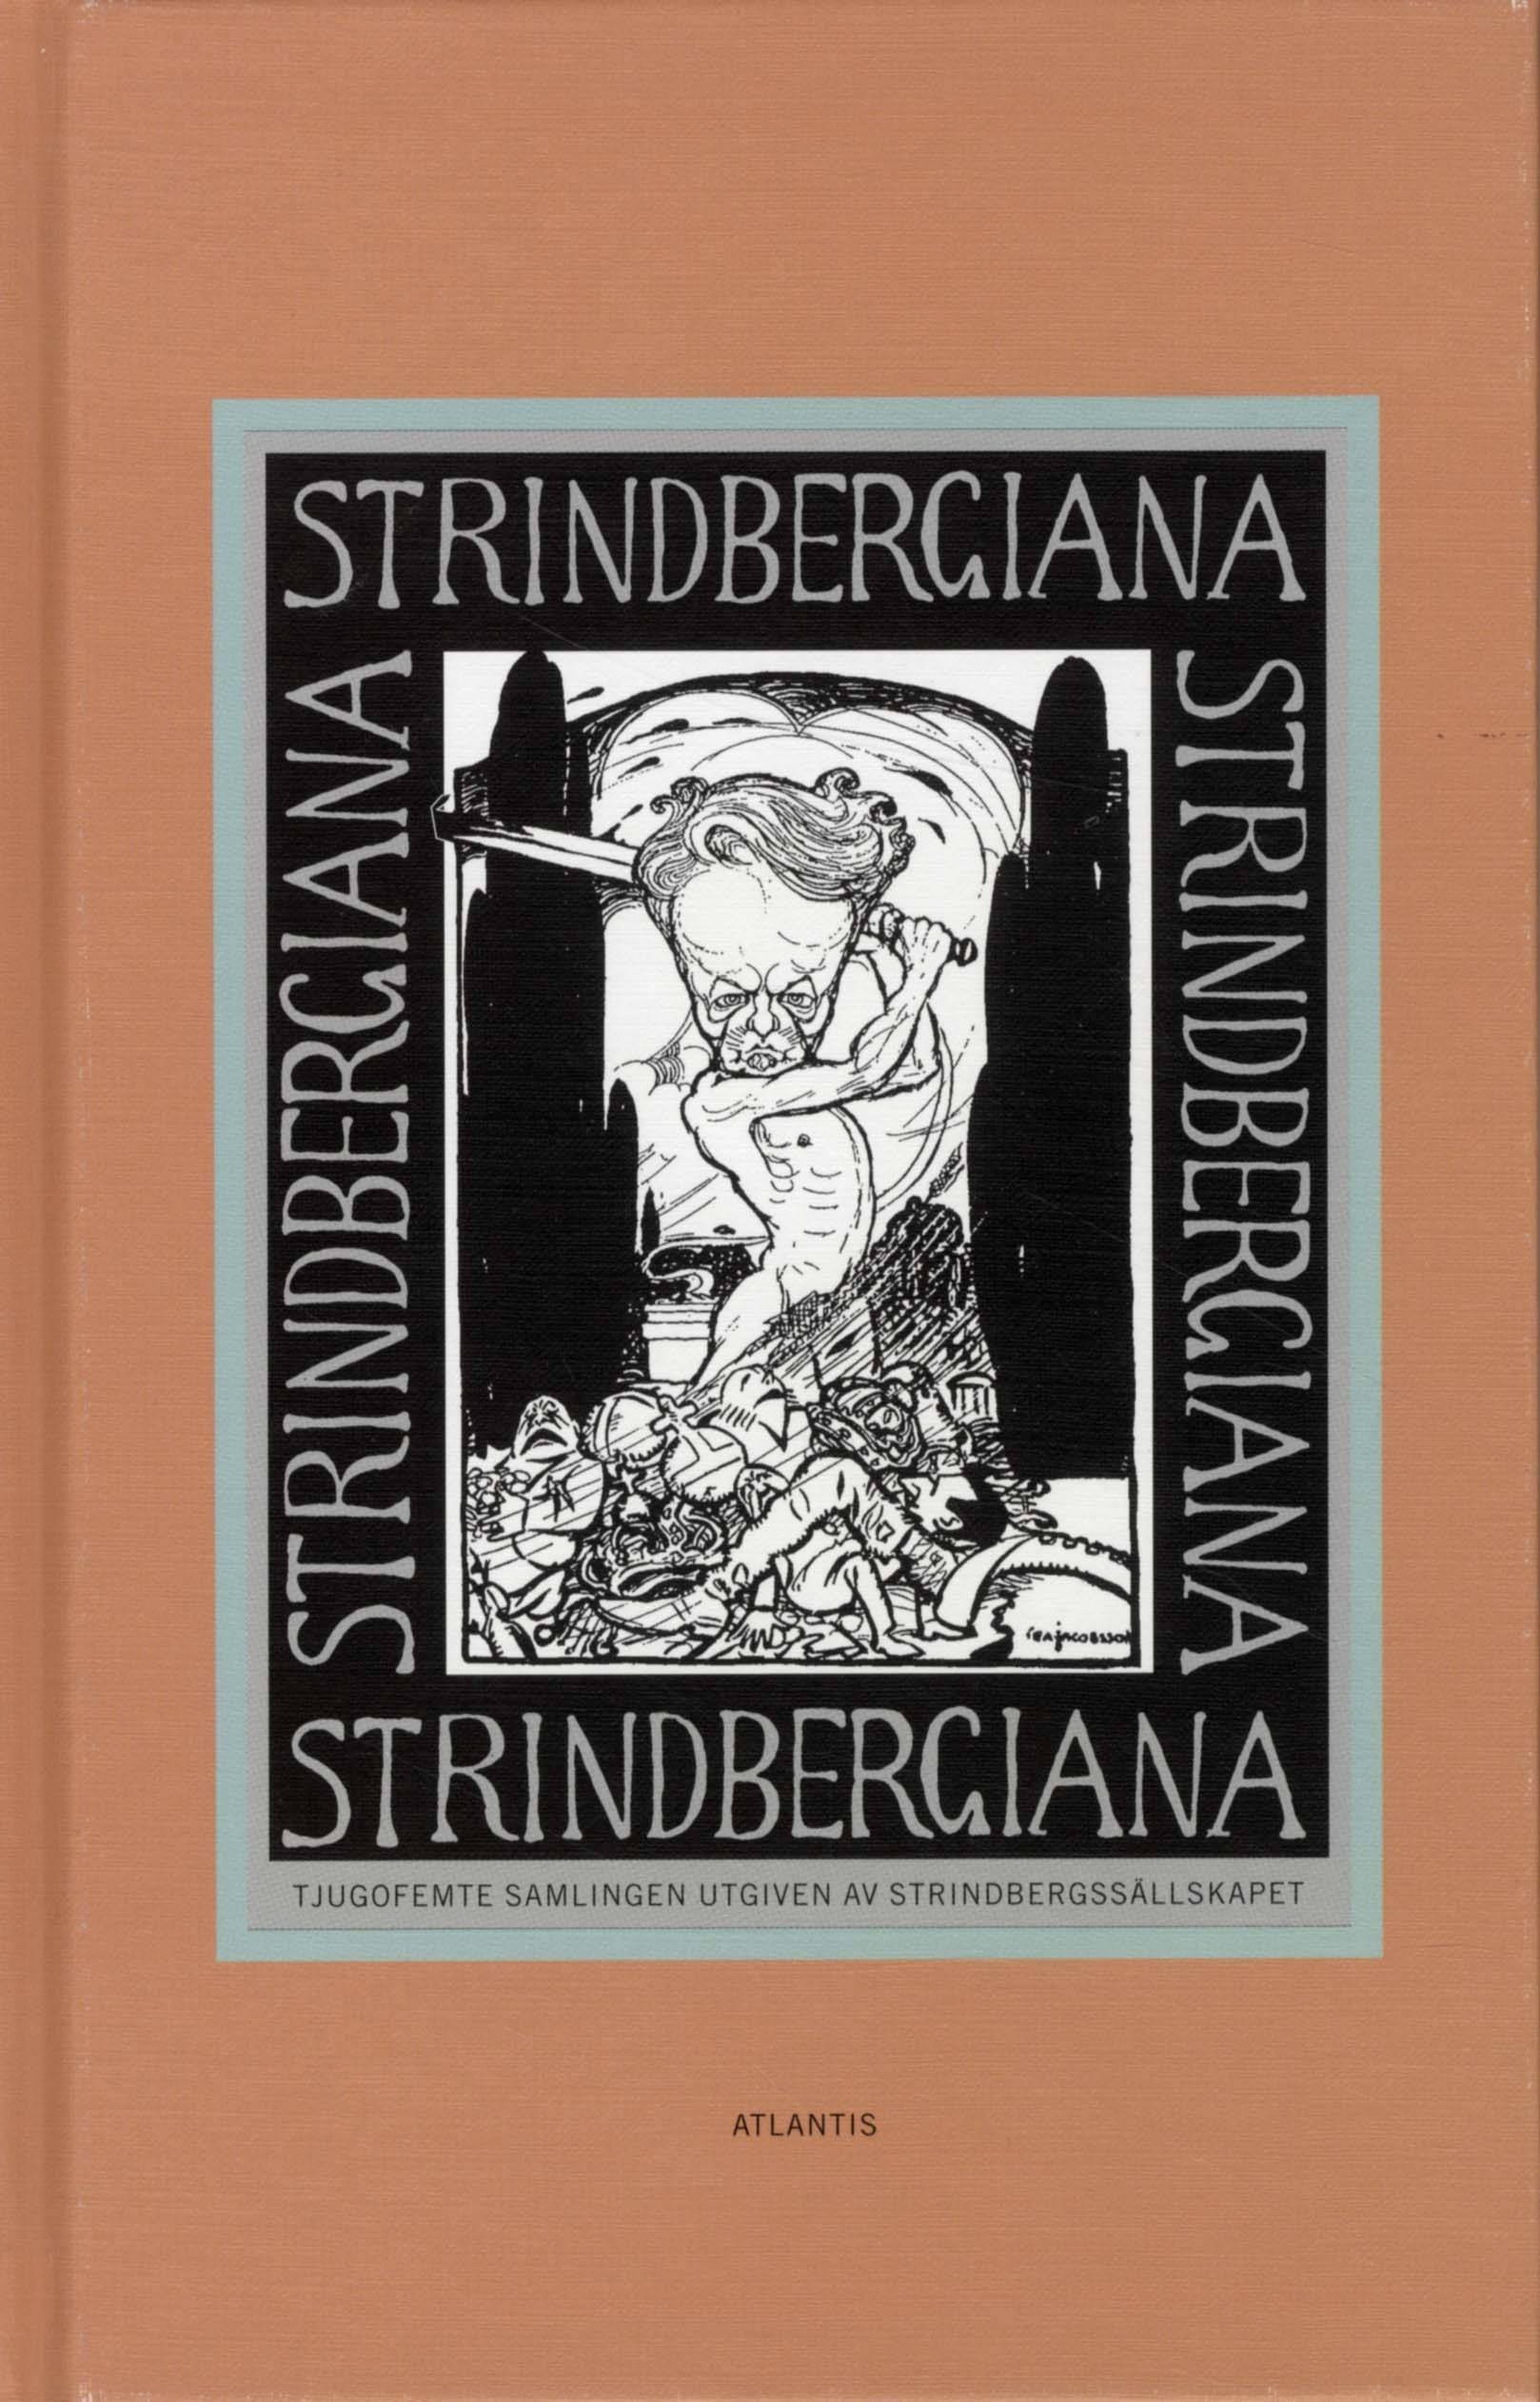 Strindbergiana - Tjugofemte samlingen utgiven av Strindbergssällskapet